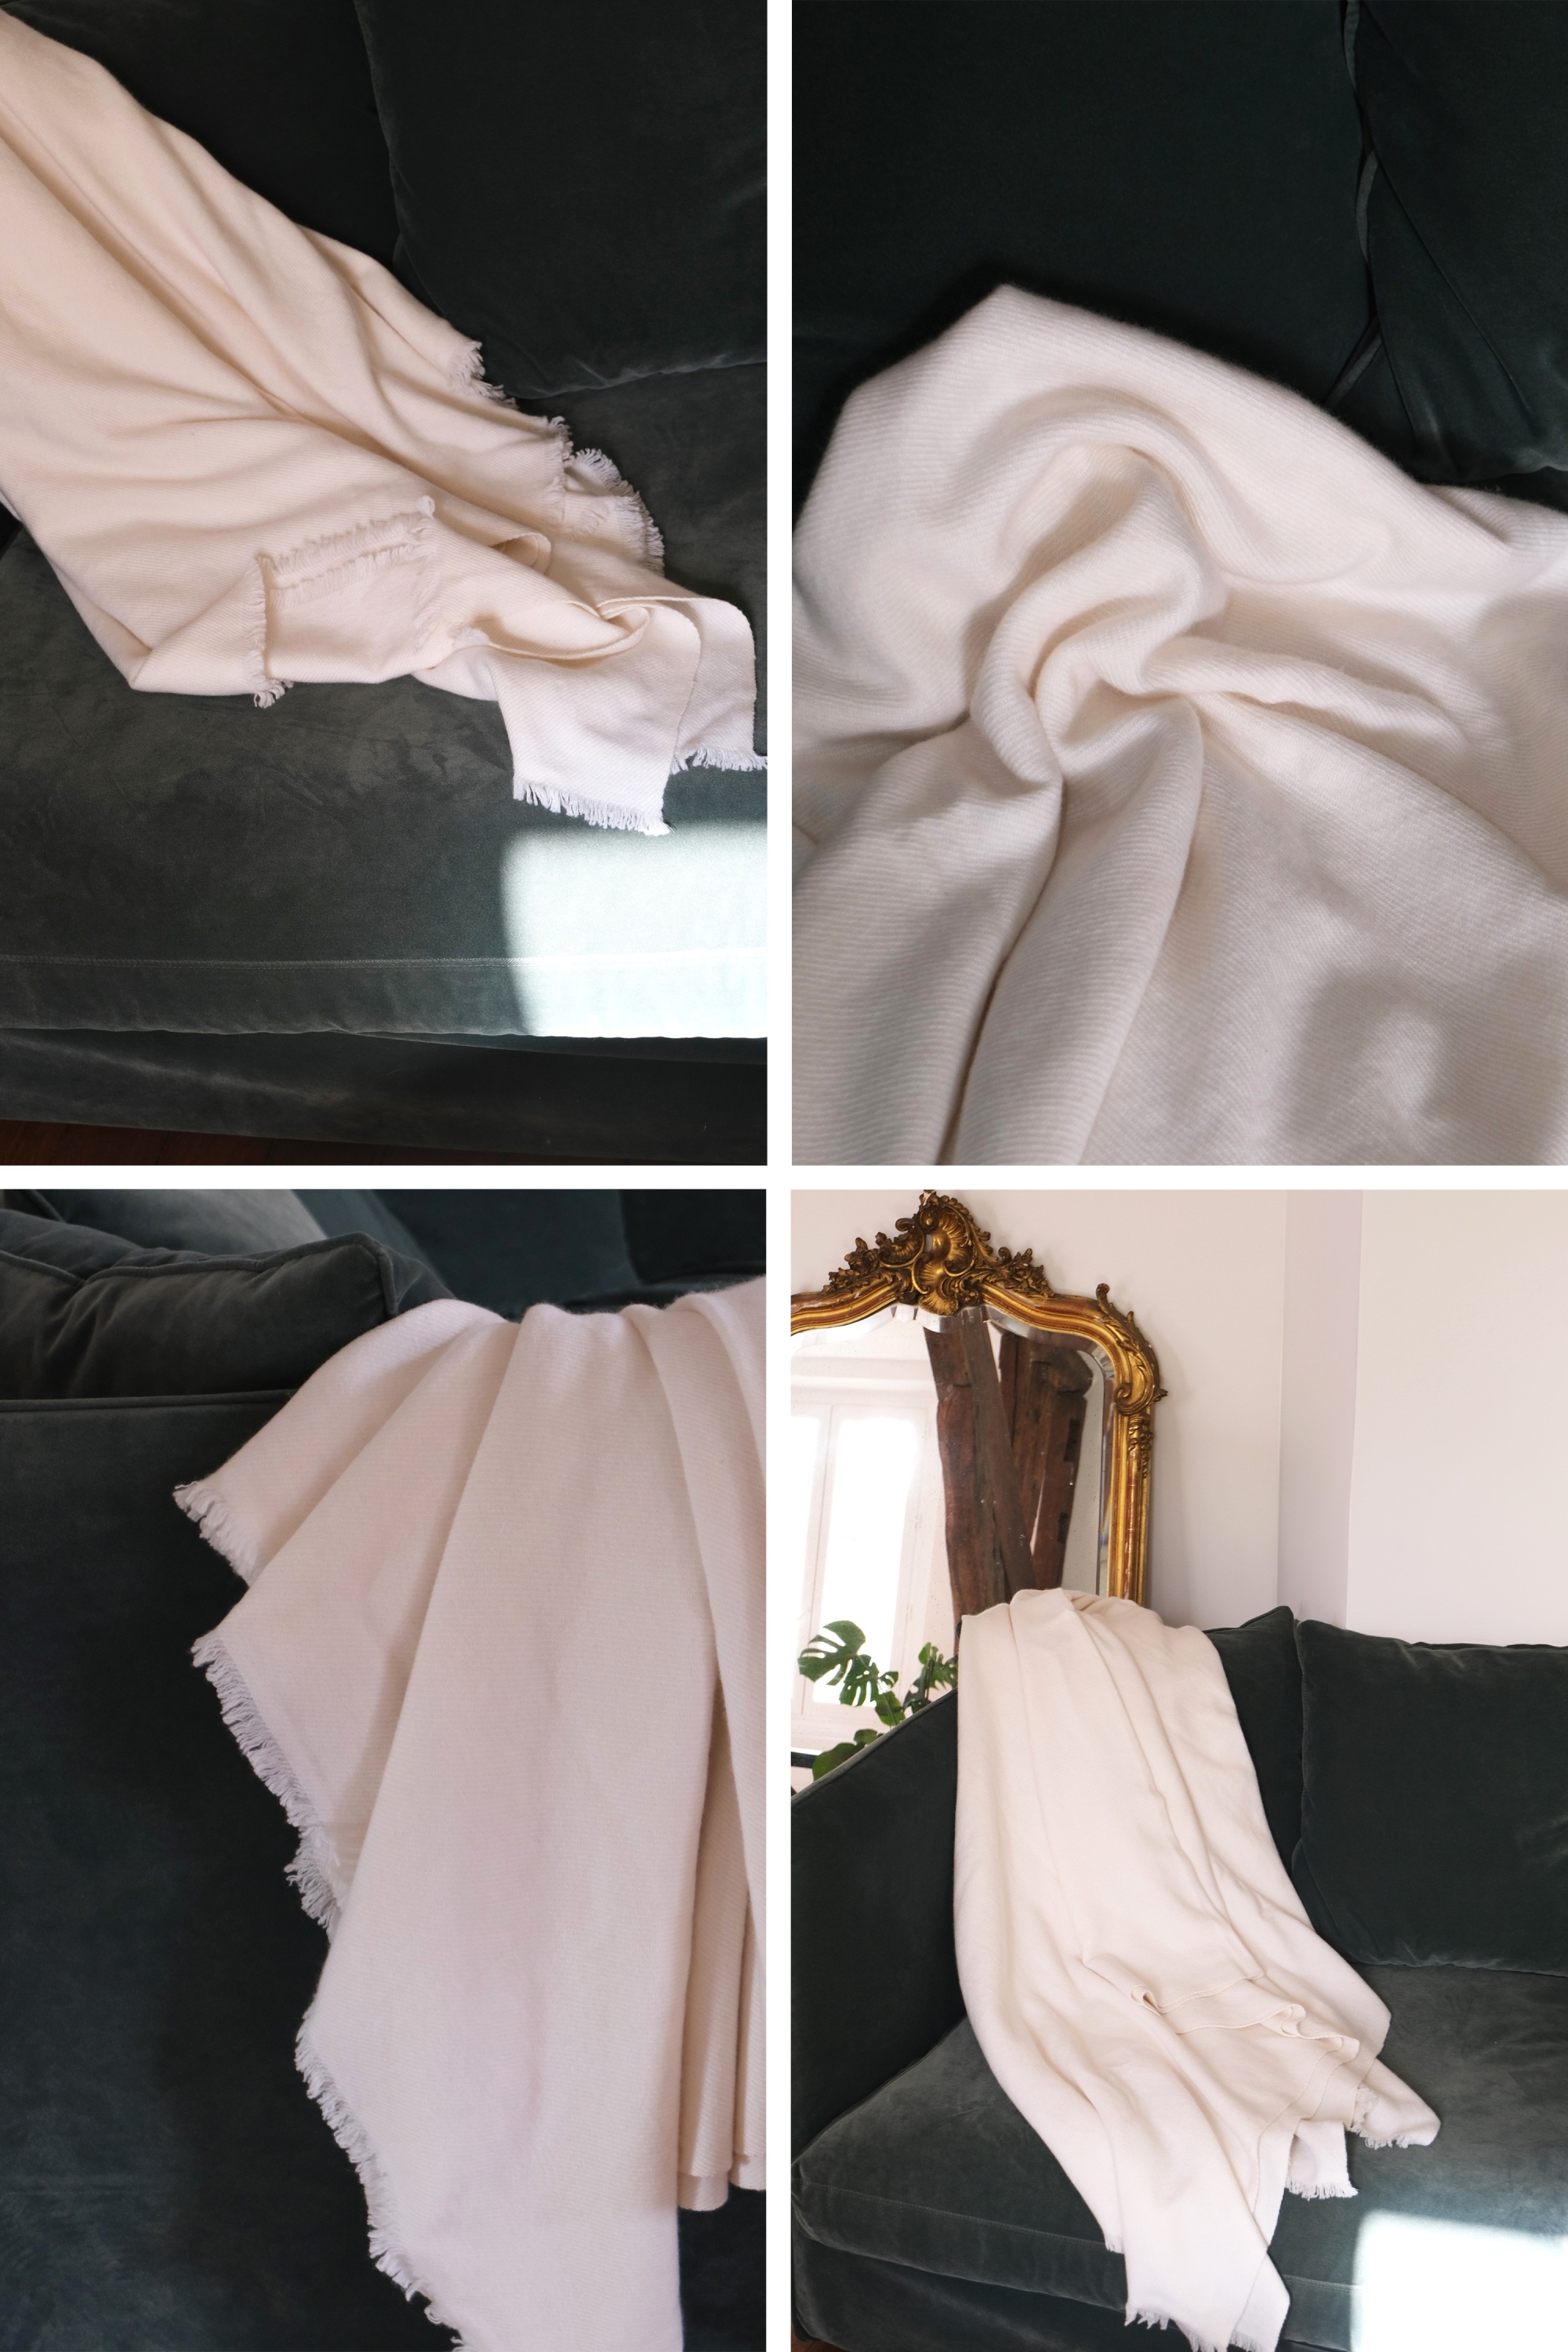 Cachemire accessoires couvertures plaids toodoo plain m 180 x 220 milk 180 x 220 cm